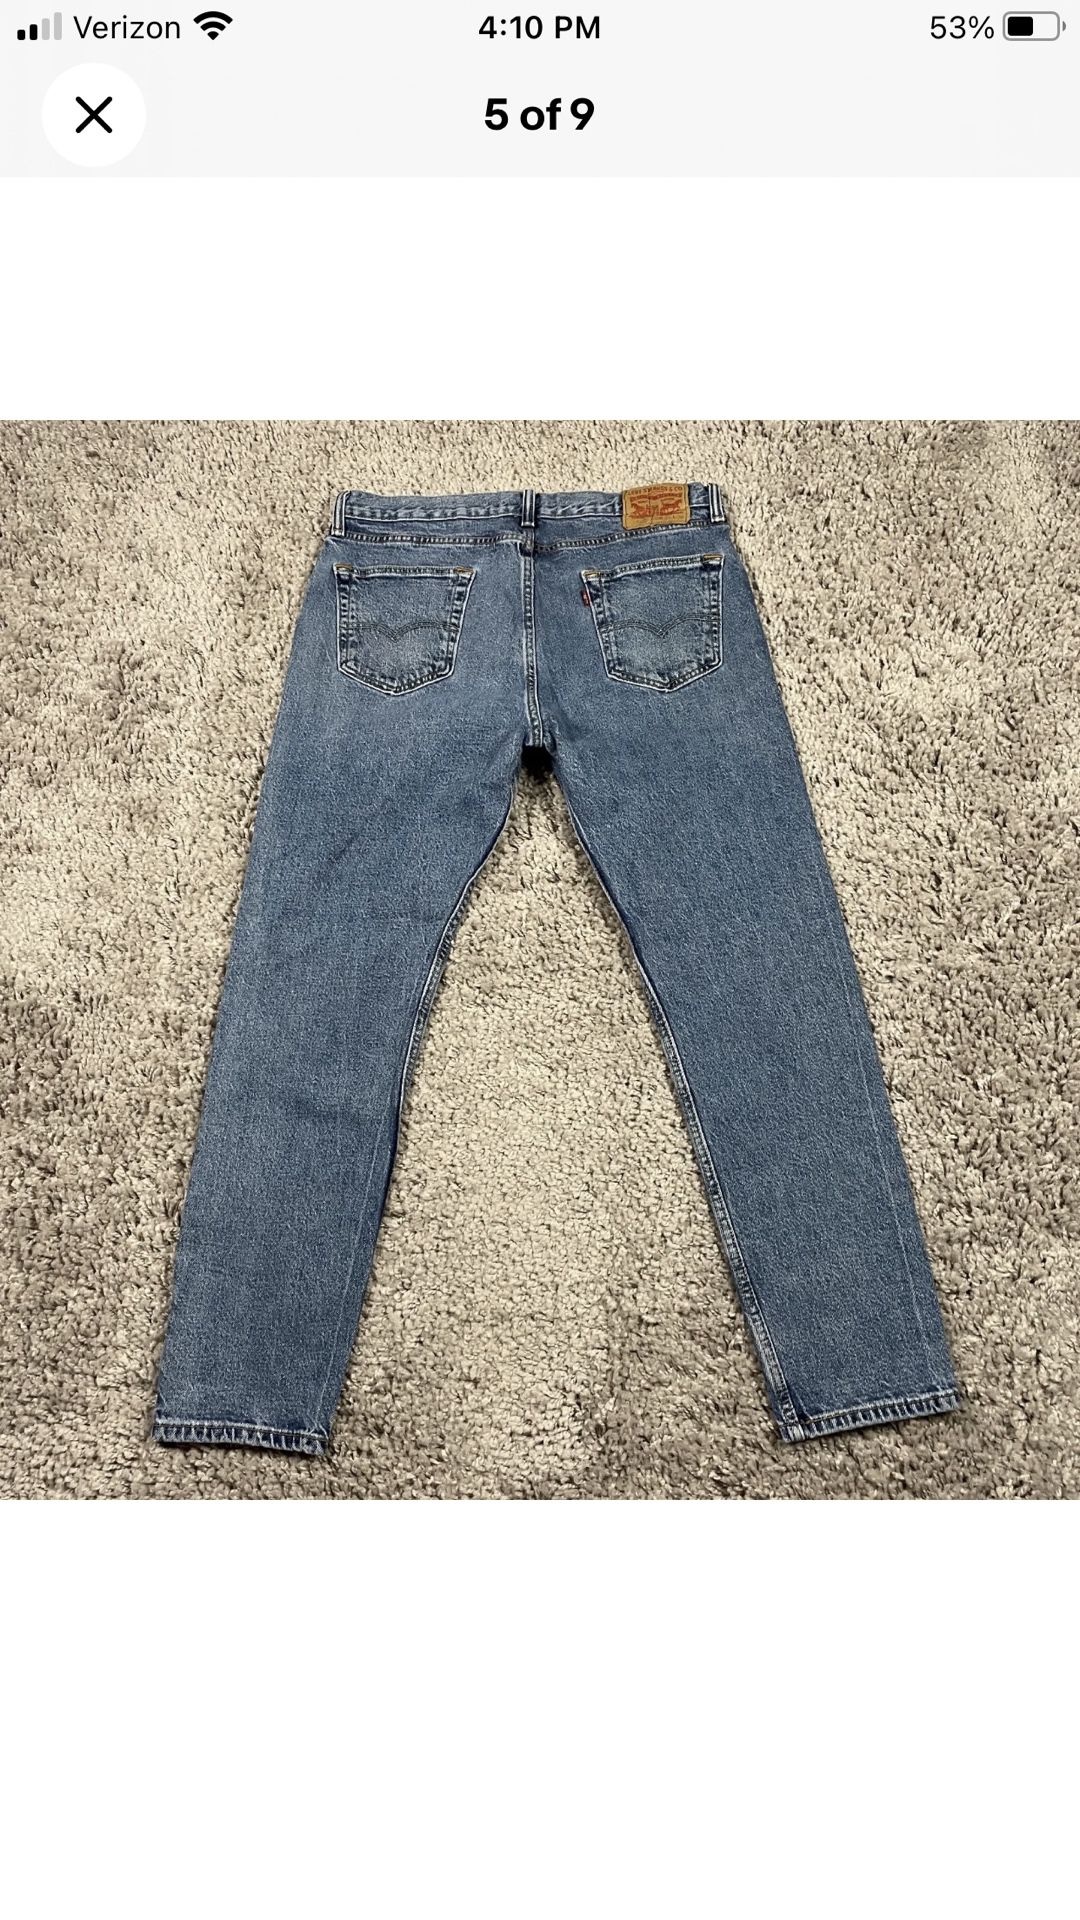 Levi's 512 Jeans Men Size W34 L30 Blue Slim Taper Denim 